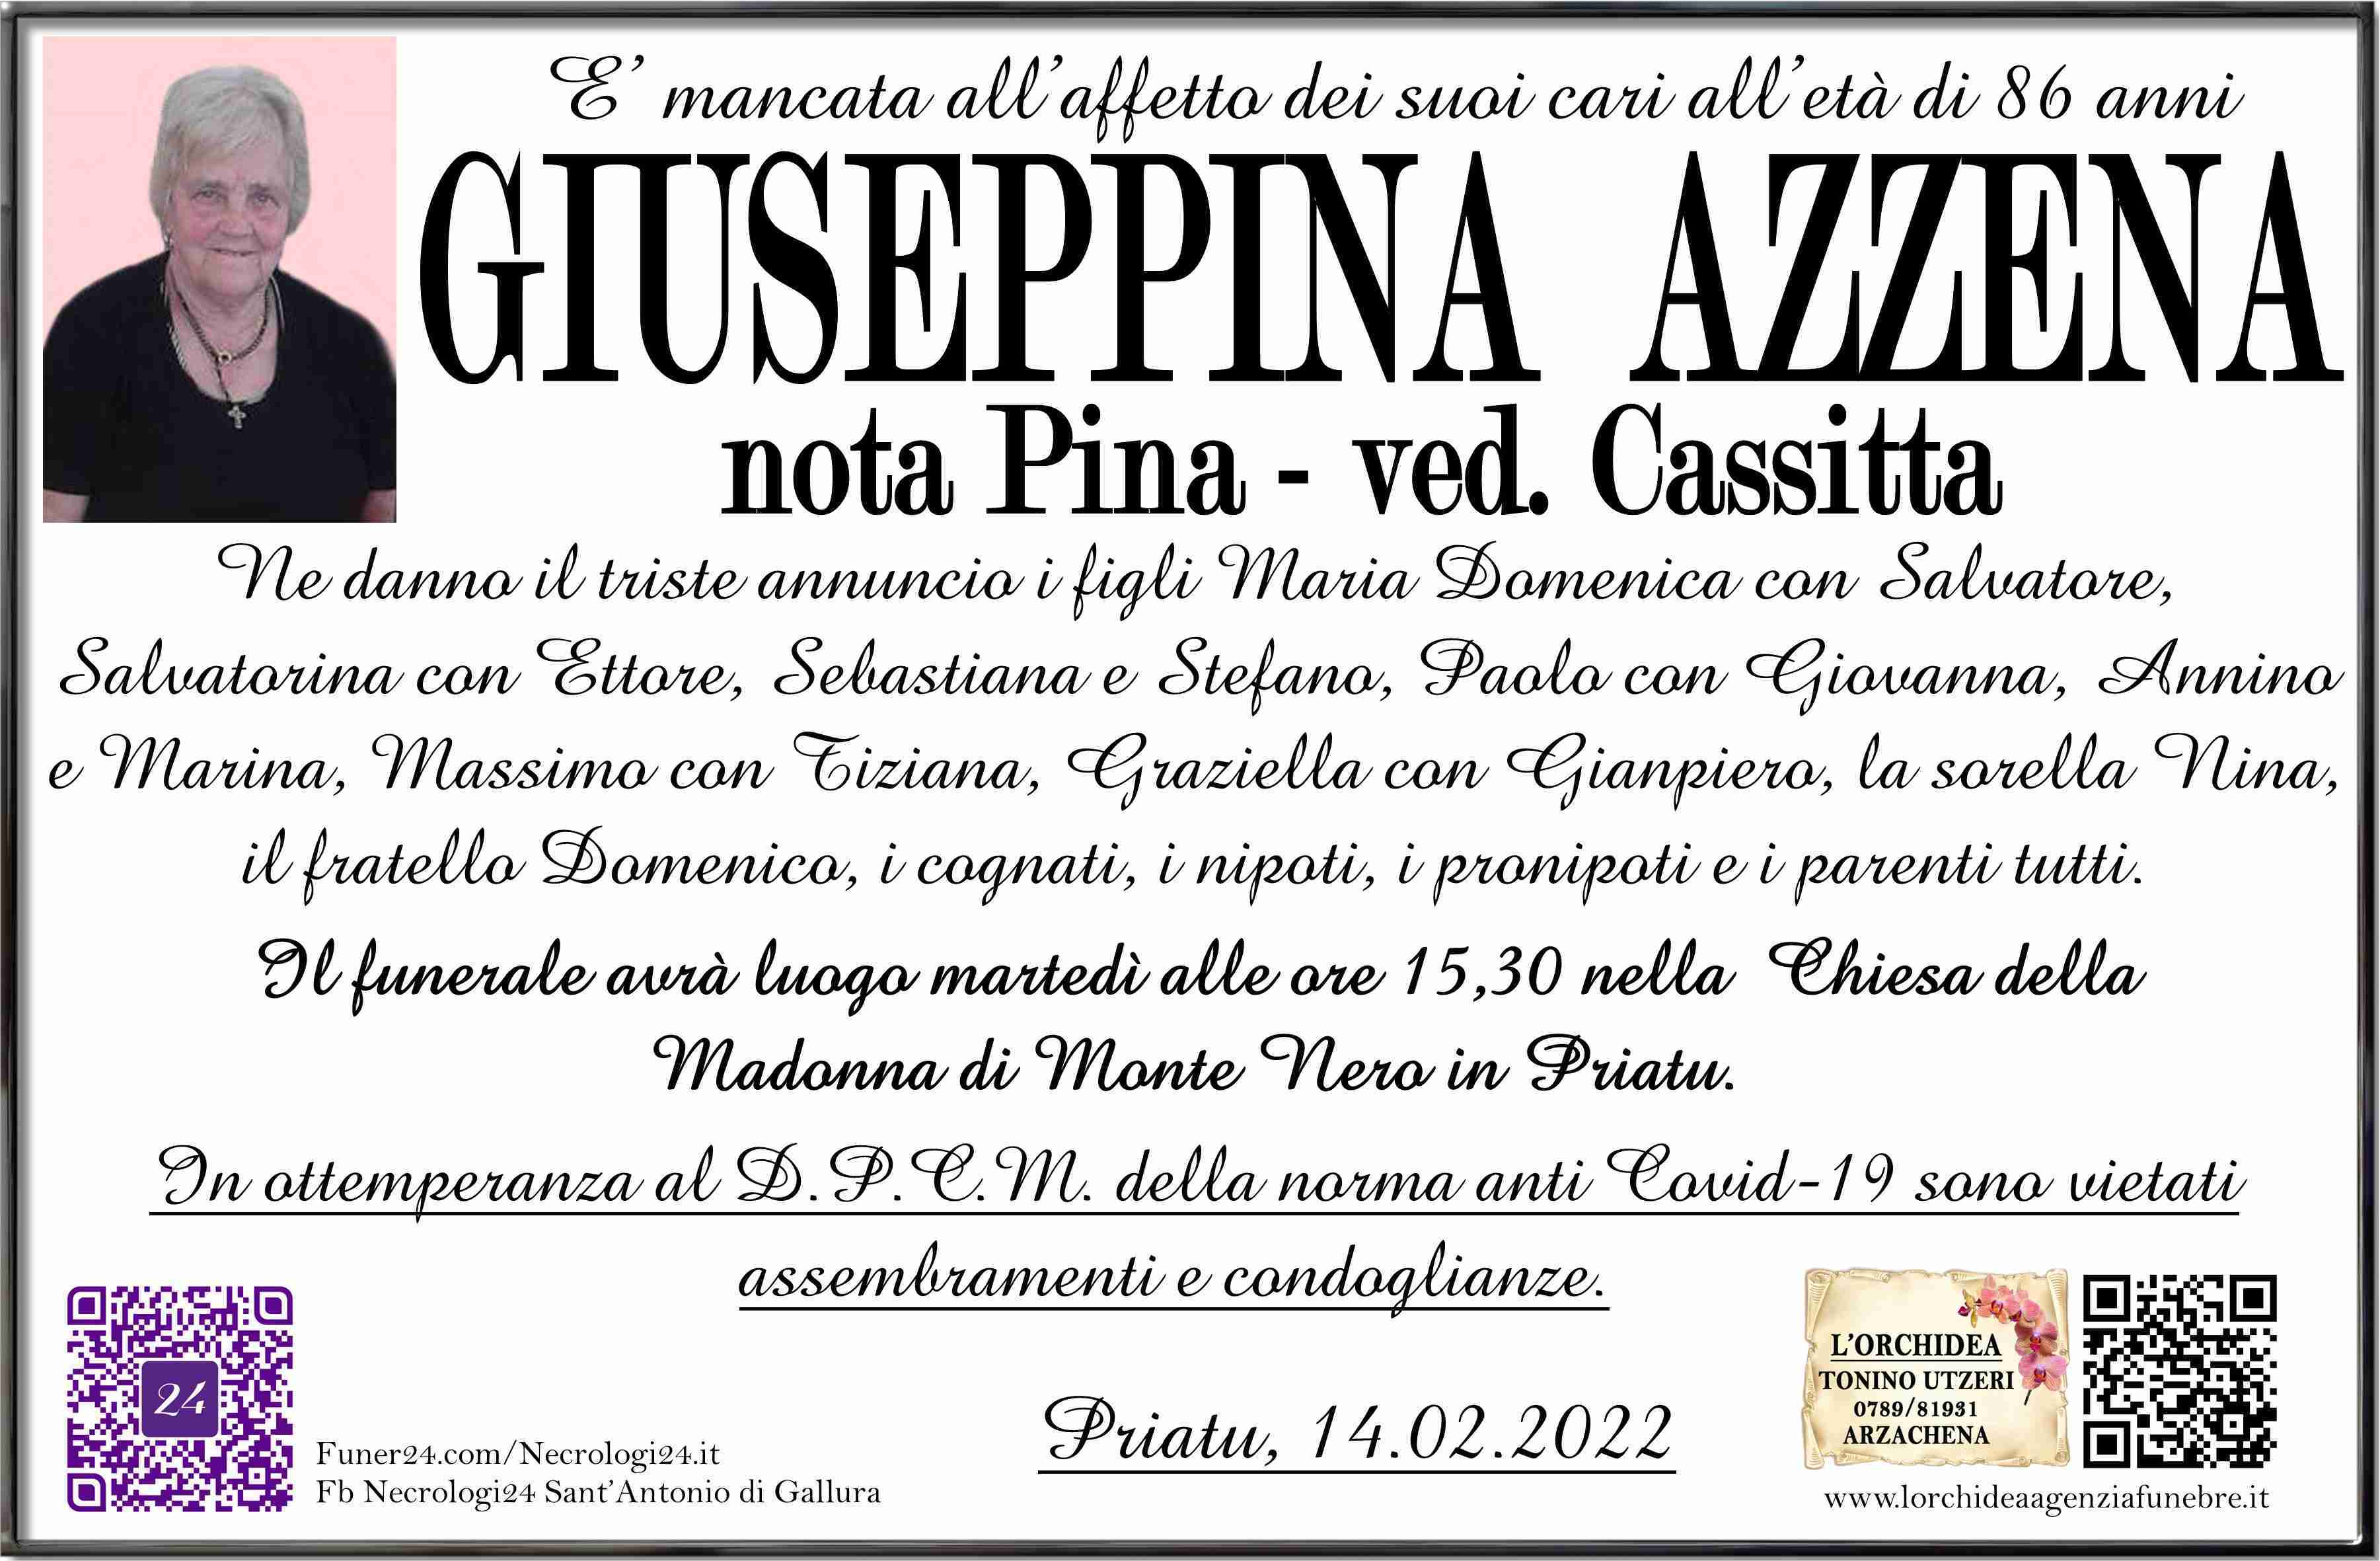 Giuseppina Azzena